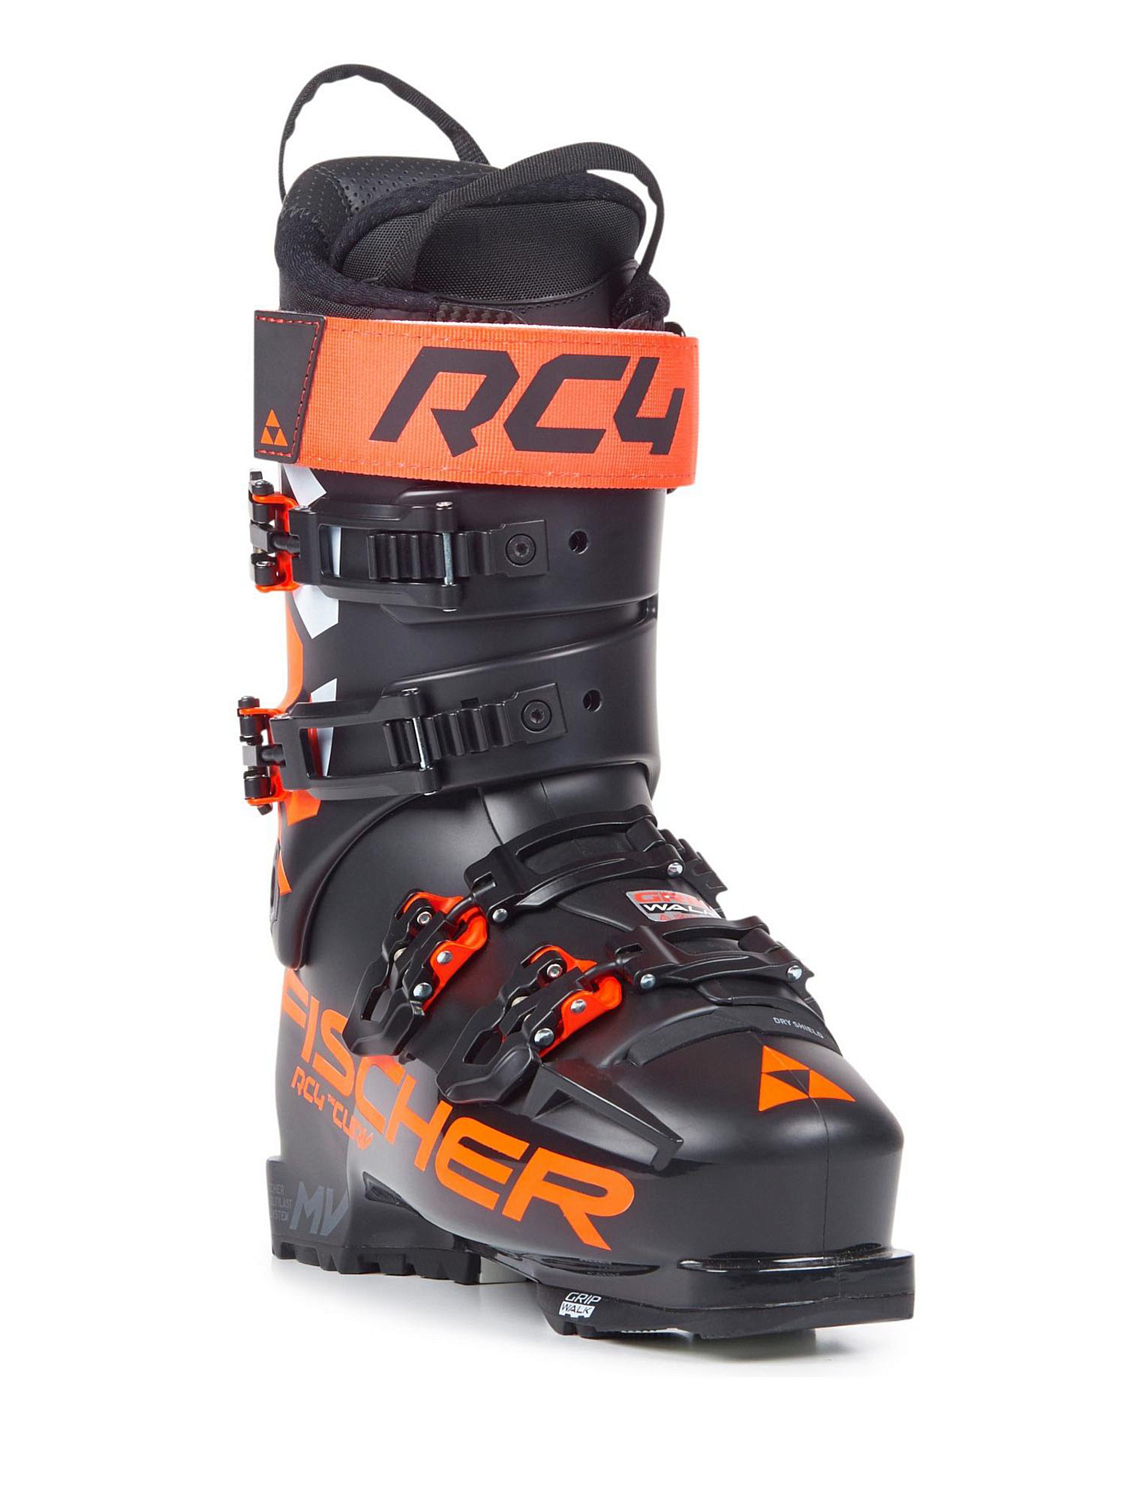 Горнолыжные ботинки FISCHER Rc4 The Curv 120 Vacuum Walk Black